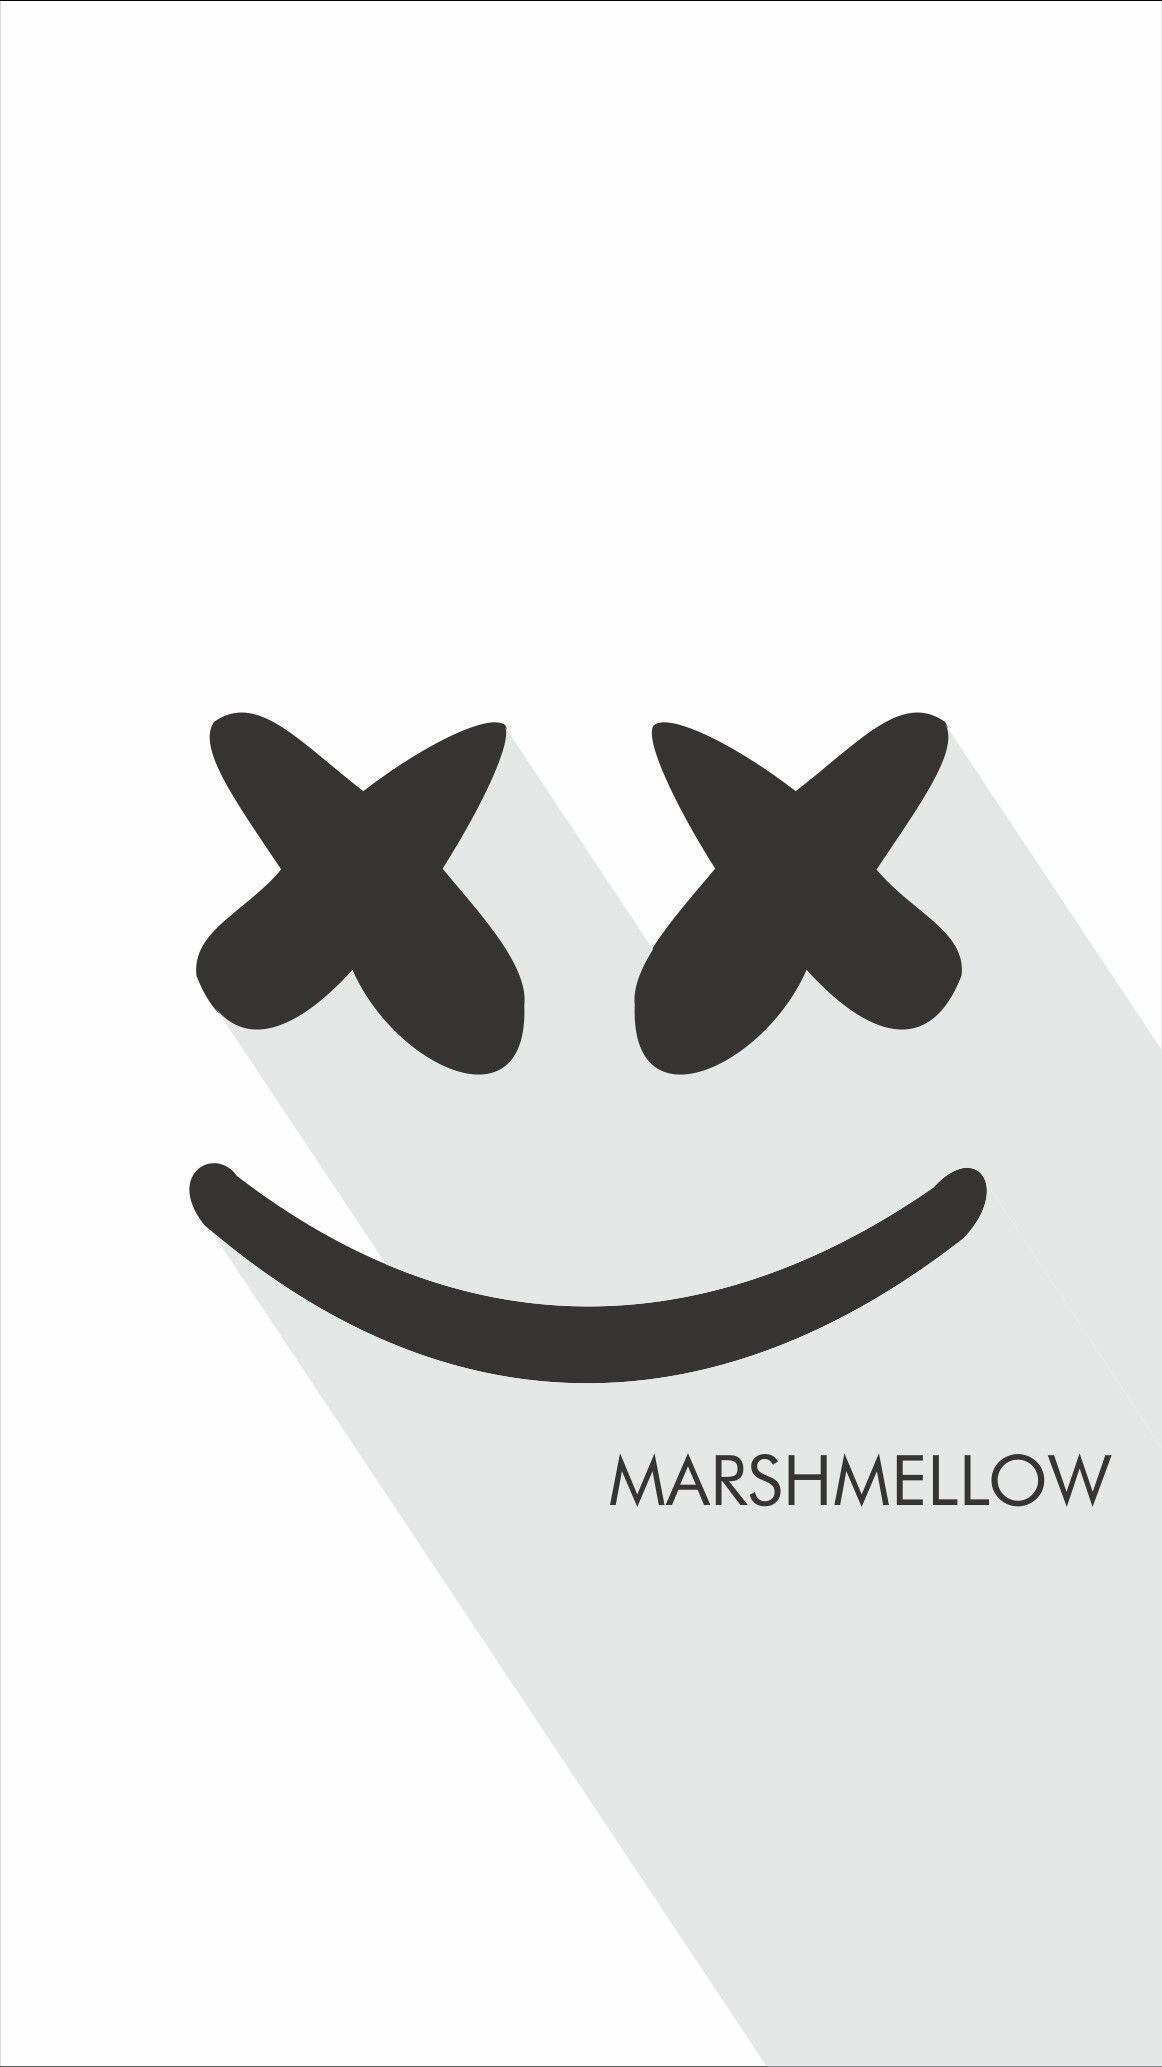 Love Marshmello love edm #marshmello #edm. Flat art